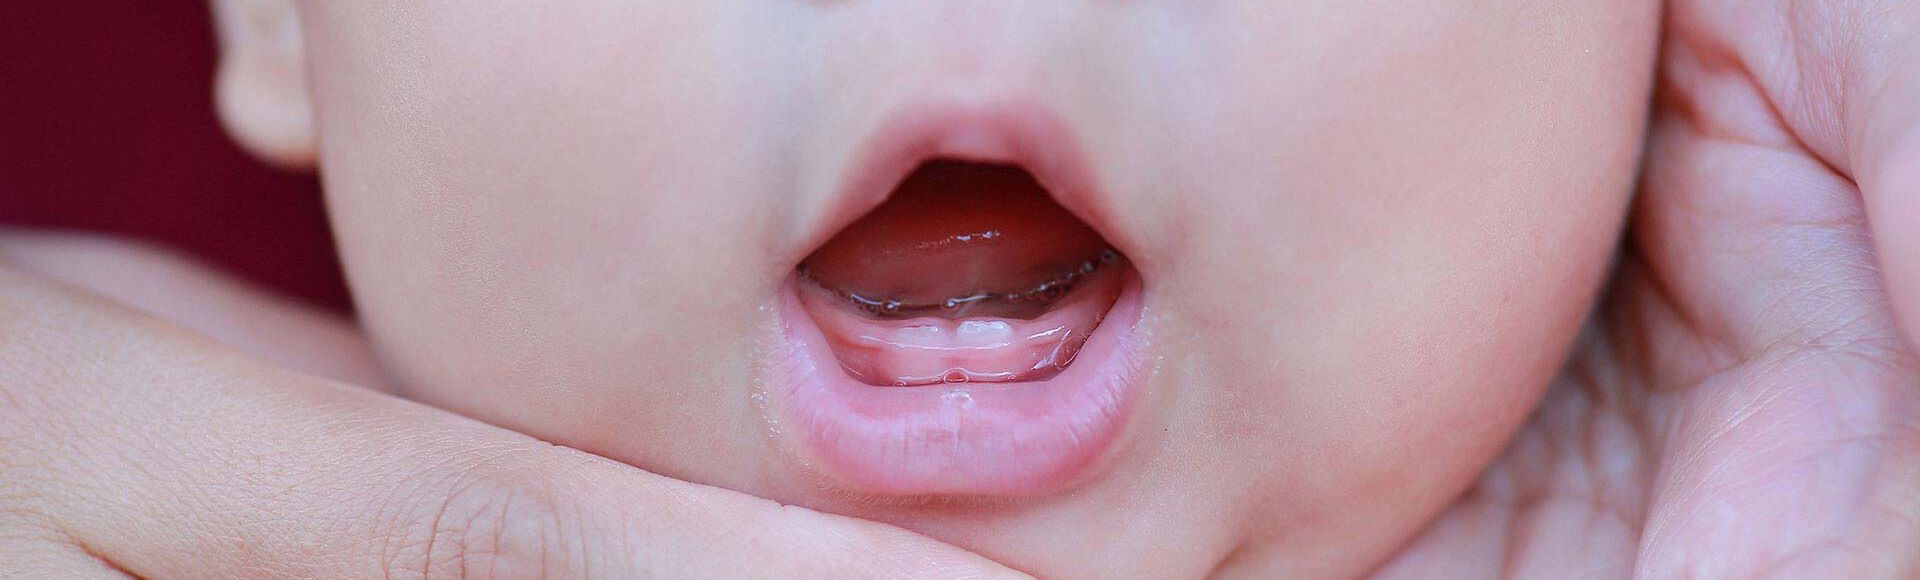 Bebé rechina los dientes